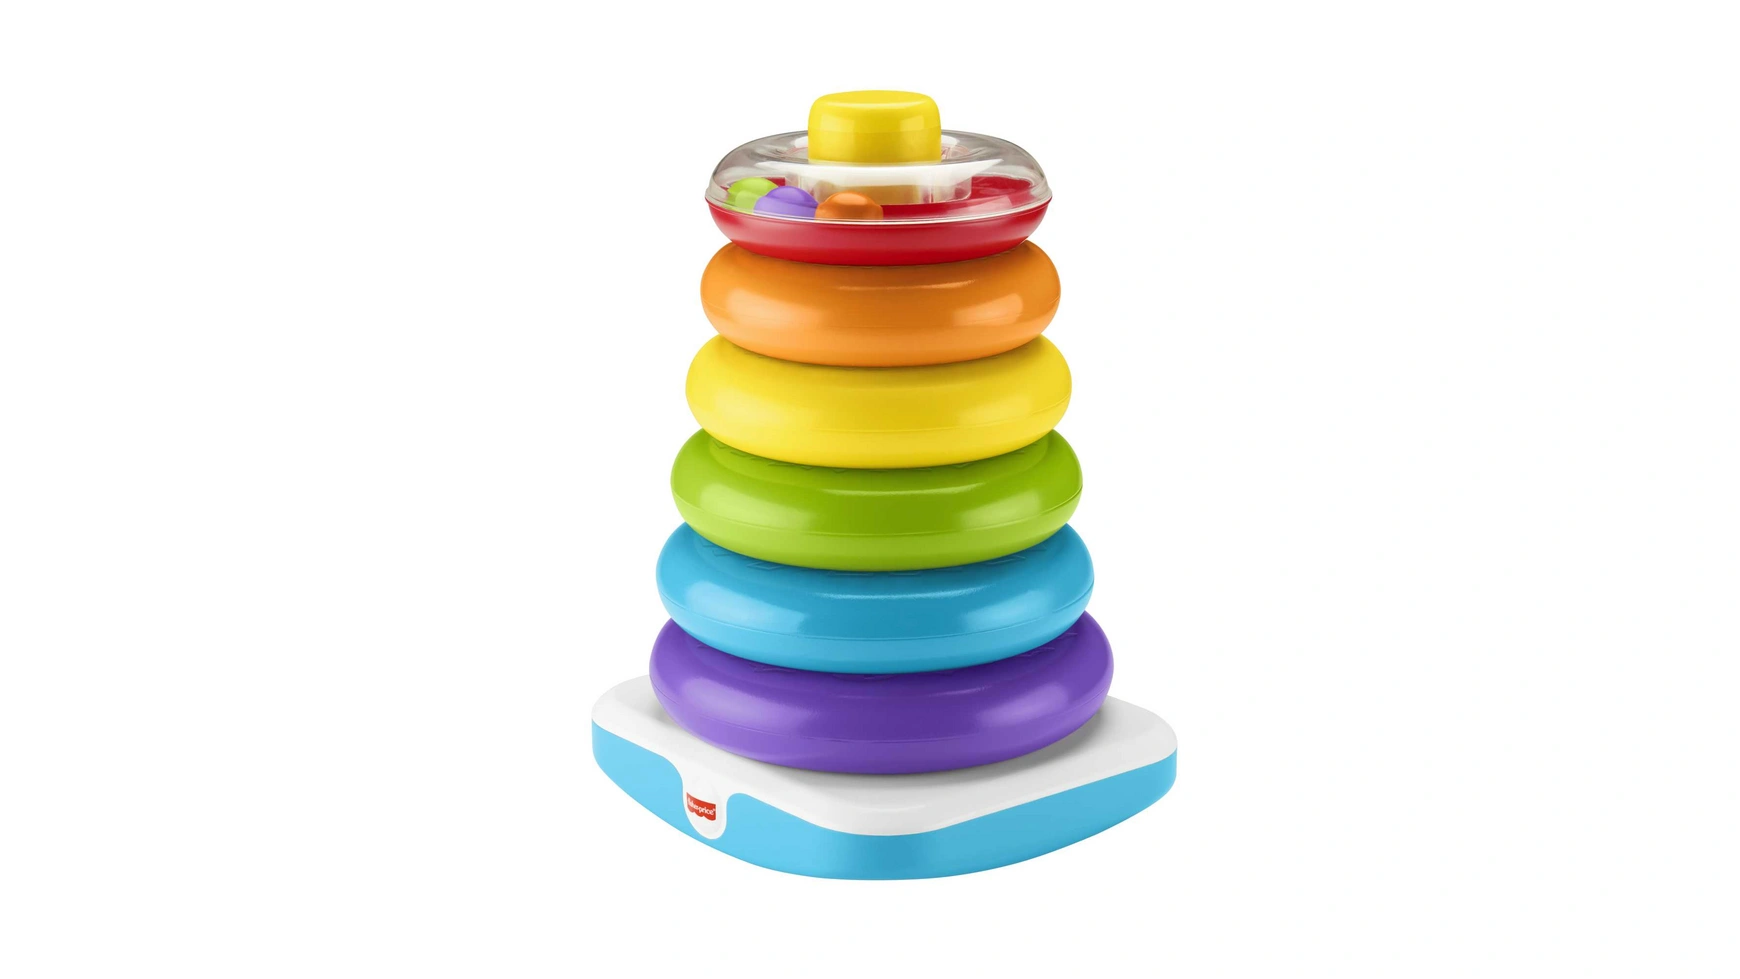 Гигантская цветная кольцевая пирамида Fisher Price, подключаемая игрушка, штабелируемая башня